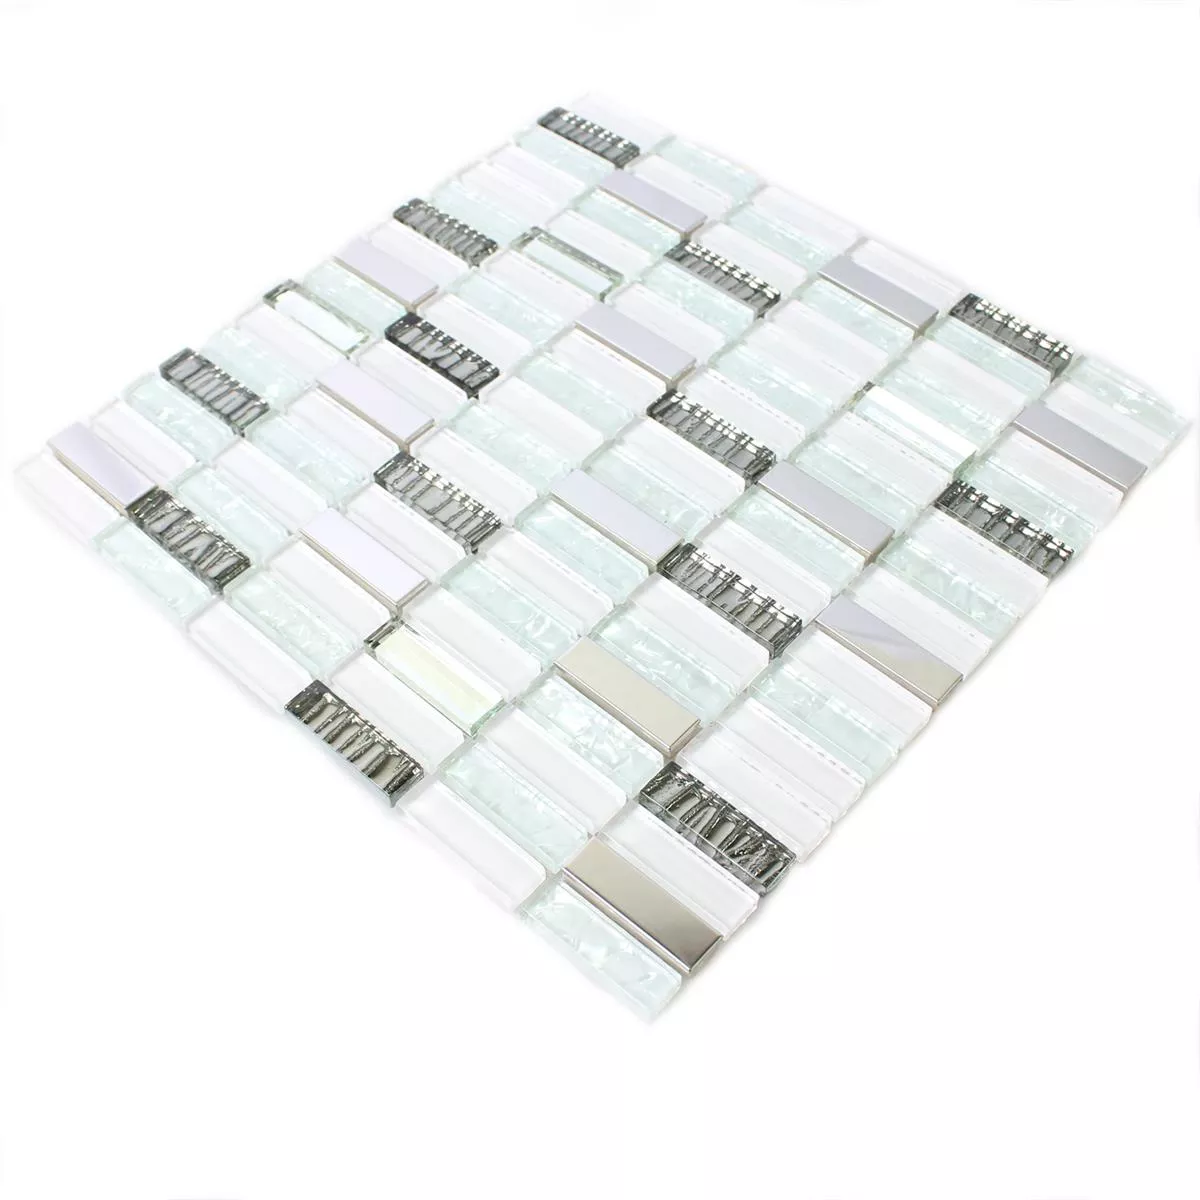 Muster von Glas Edelstahl Mosaikfliesen Admont Weiss Stick